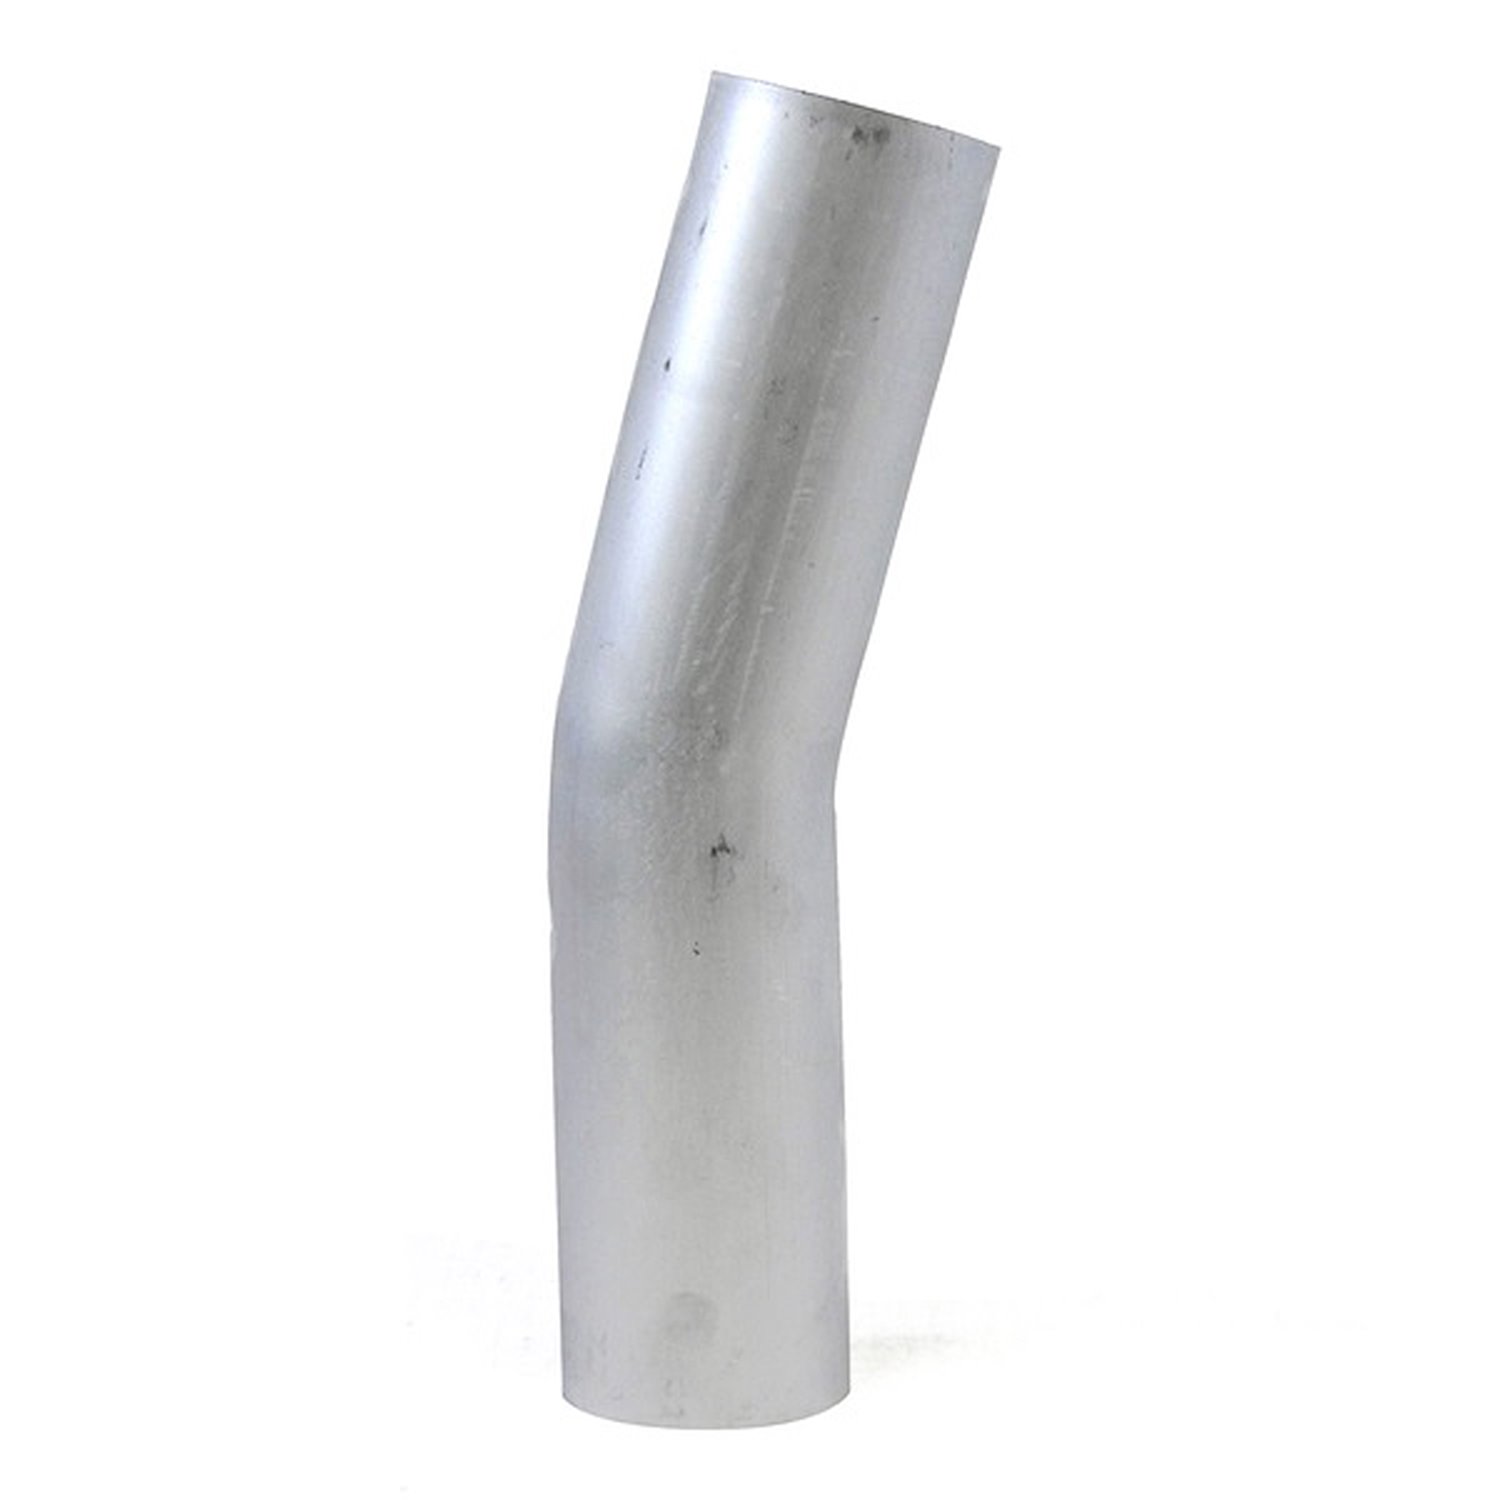 AT15-200-CLR-312 Aluminum Elbow Tube, 6061 Aluminum, 15-Degree Bend Elbow Tubing, 2 in. OD, Large Radius, 3 1/8 in. CLR